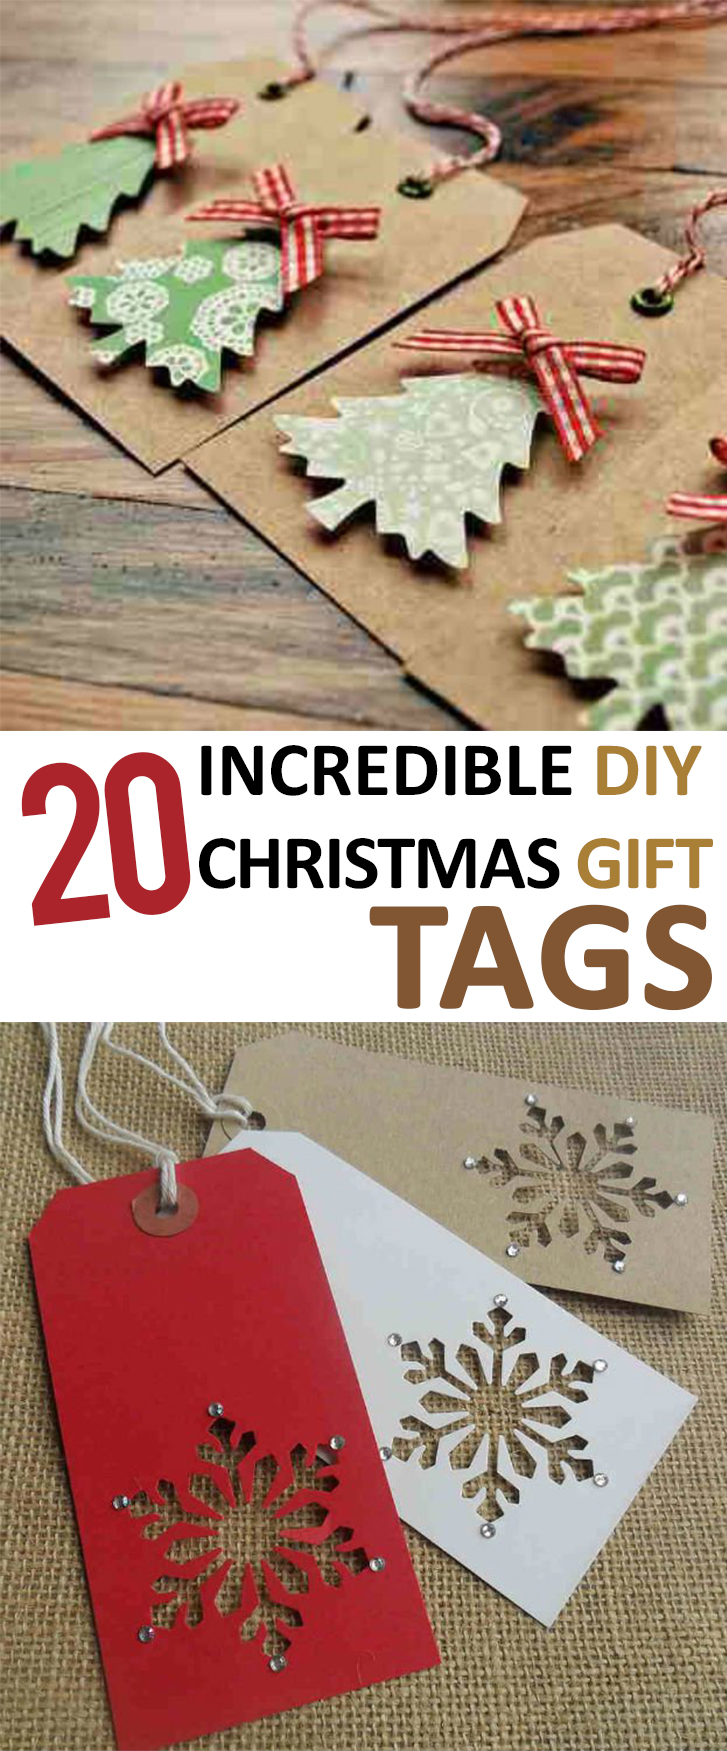 20-incredible-diy-christmas-gift-tags